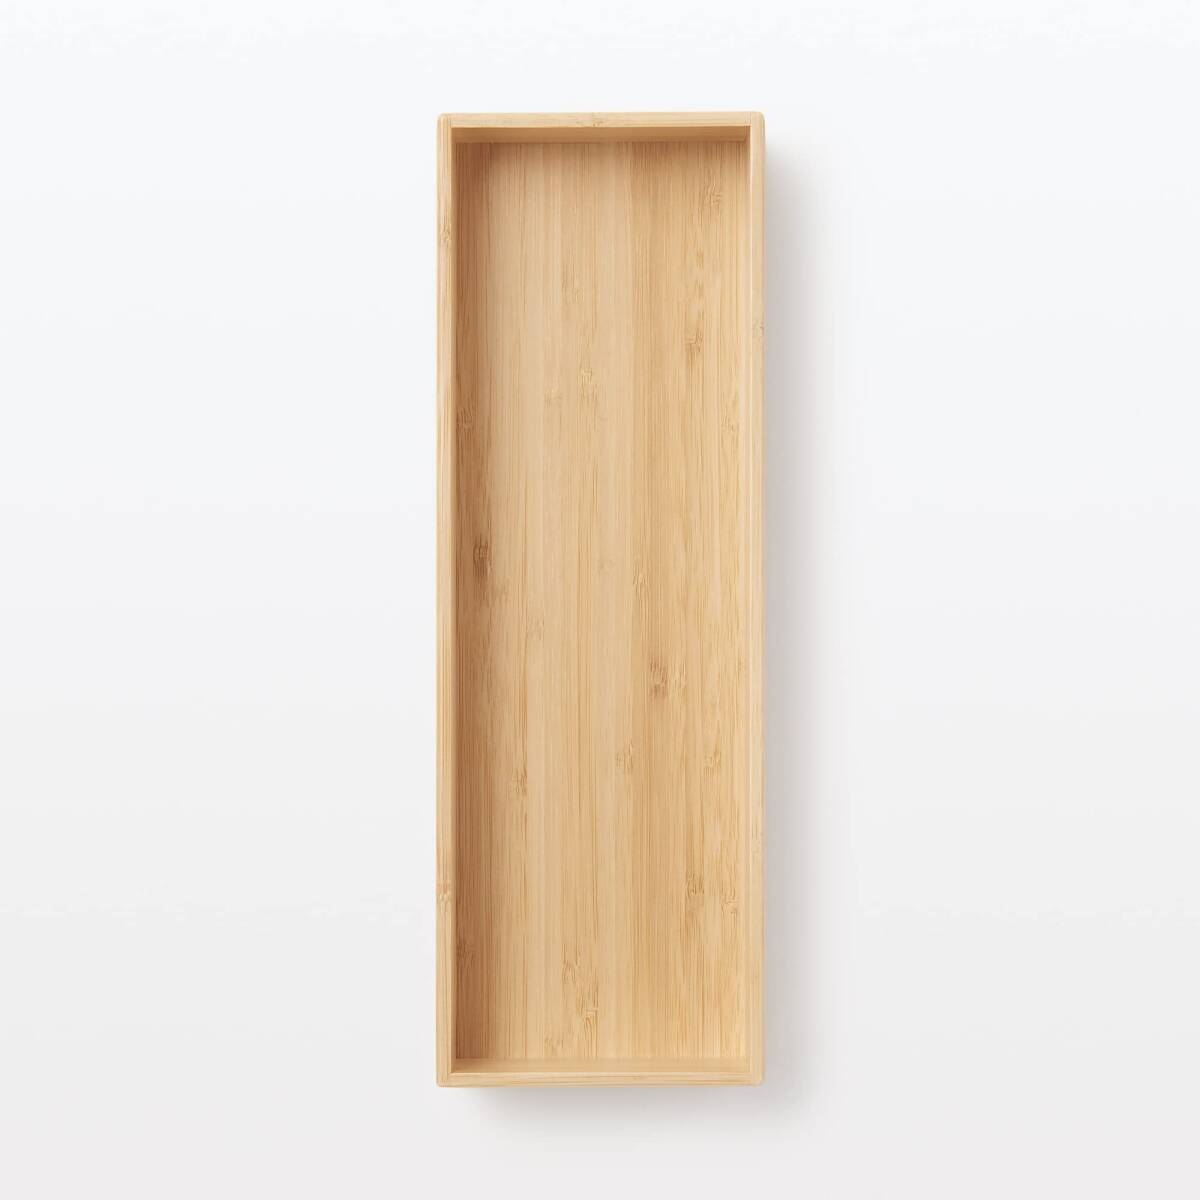 無印良品 重なる竹材整理ボックス 収納用品 大 幅11.5×奥行34×高さ5.5cm 12057895_画像4